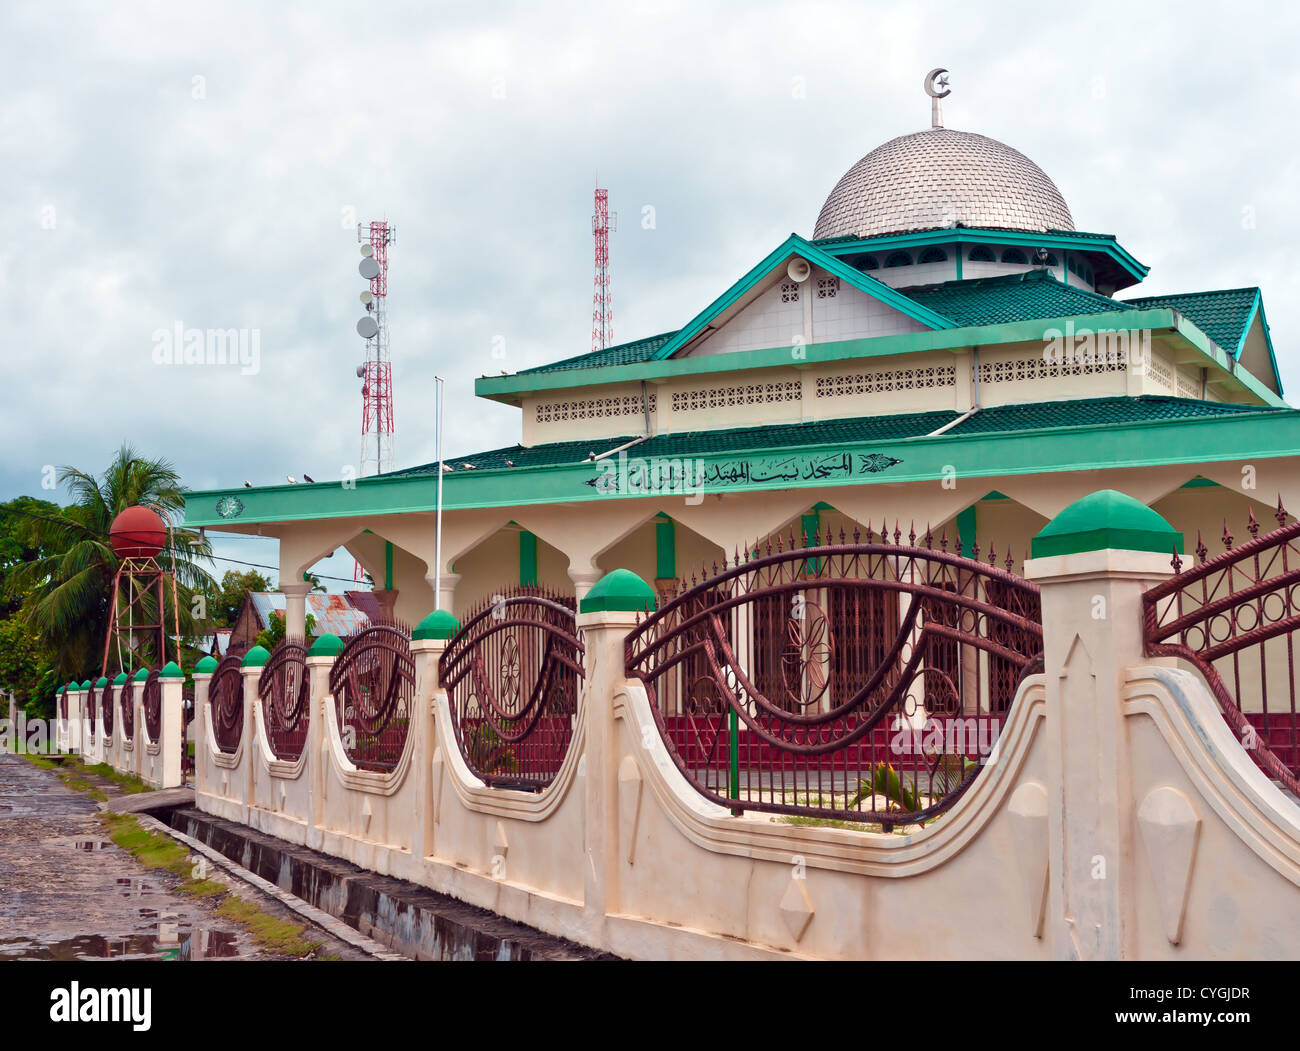 Vue de la mosquée islamique sur une île tropicale isolée Banque D'Images